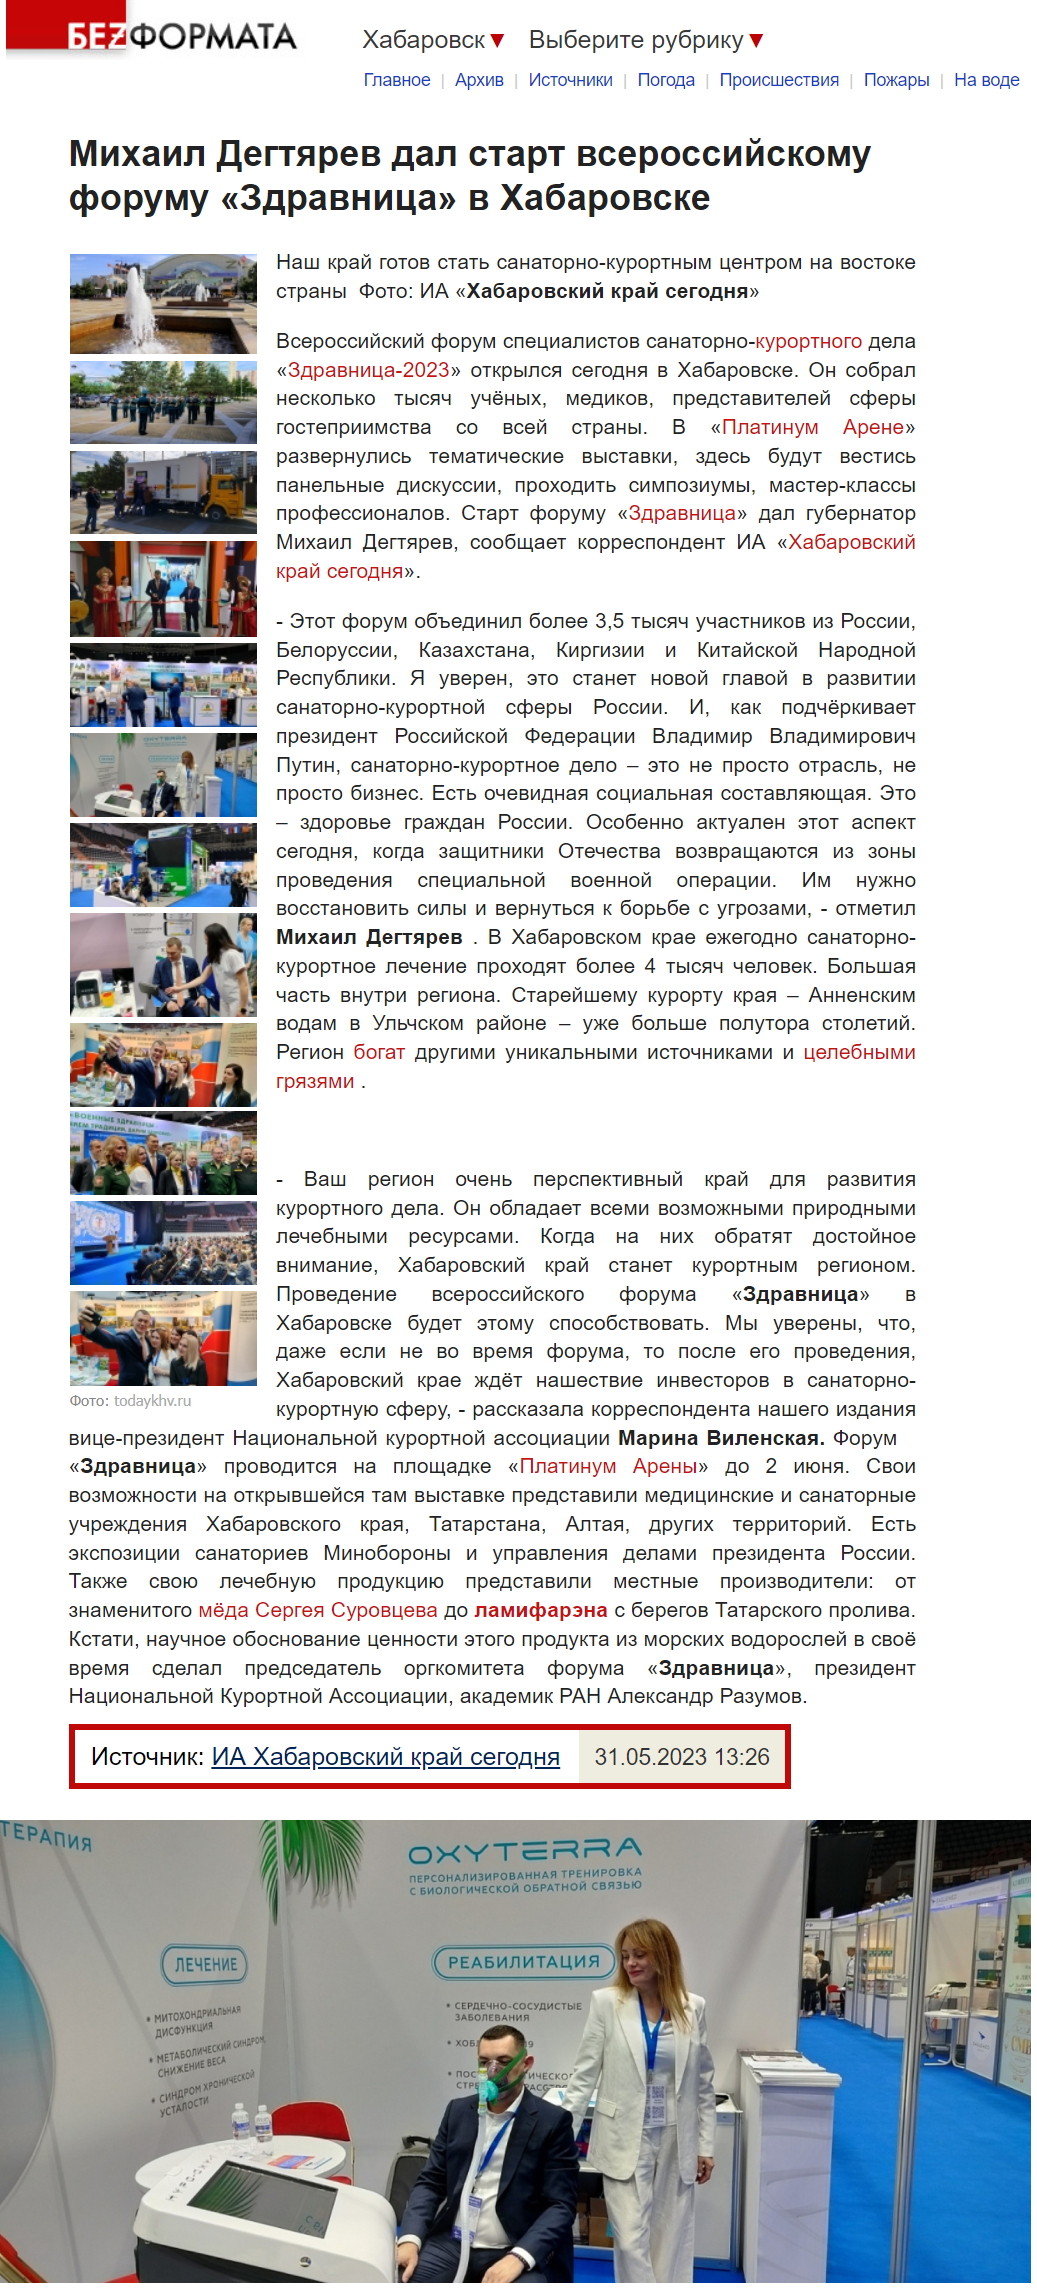 Михаил Дегтярев дал старт всероссийскому форуму «Здравница» в Хабаровске